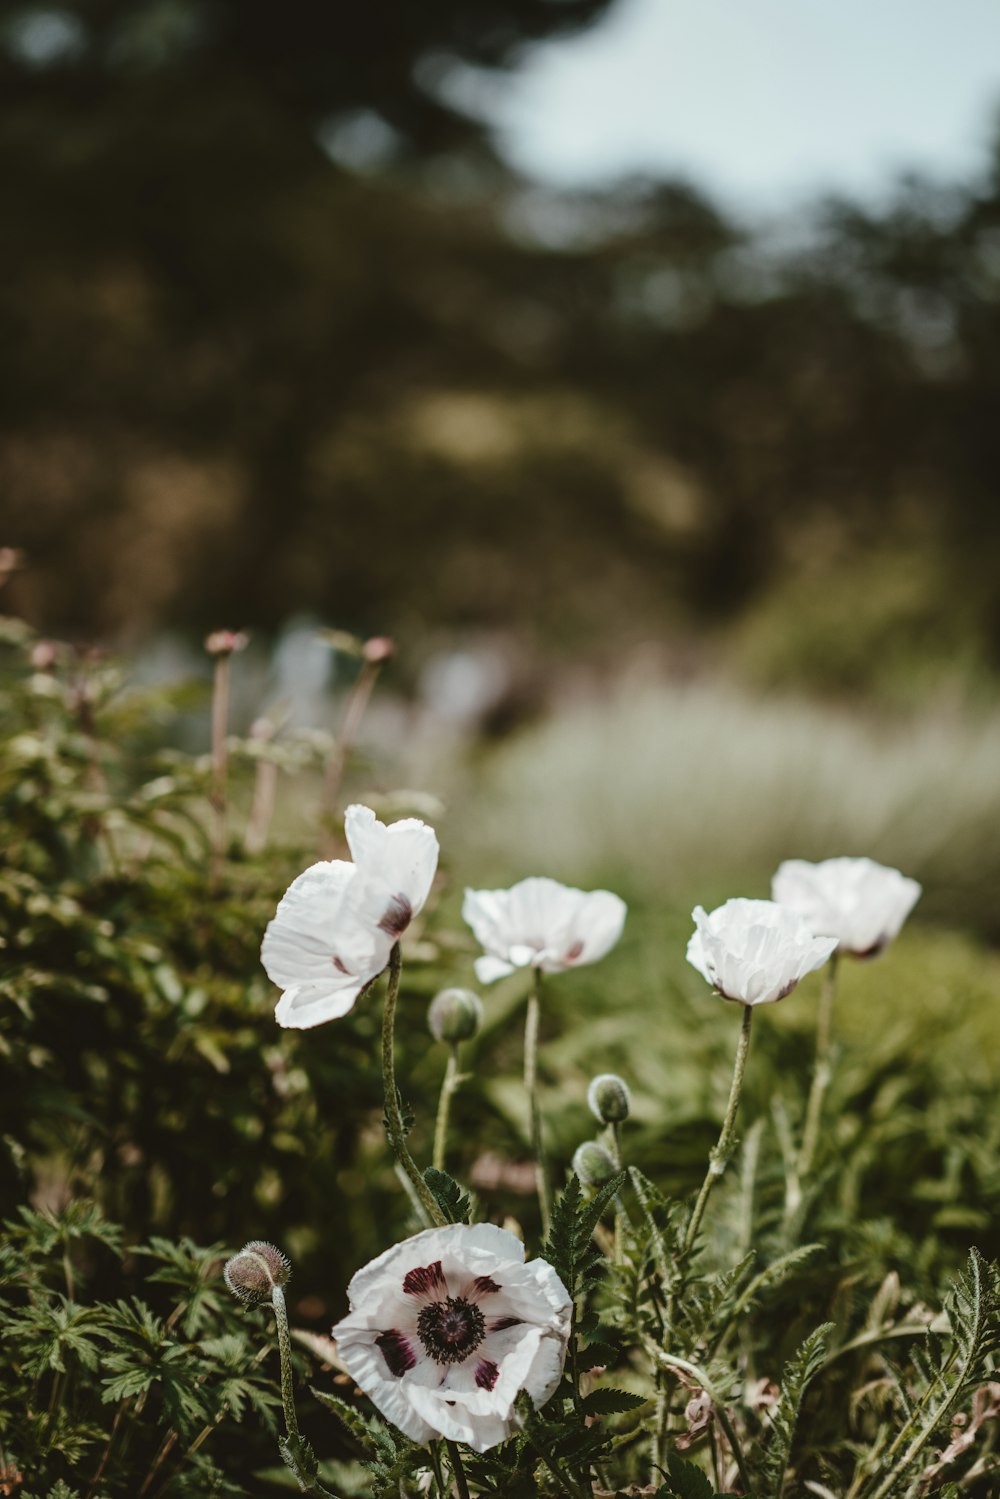 fotografia em closeup de flores brancas de pétalas agrupadas